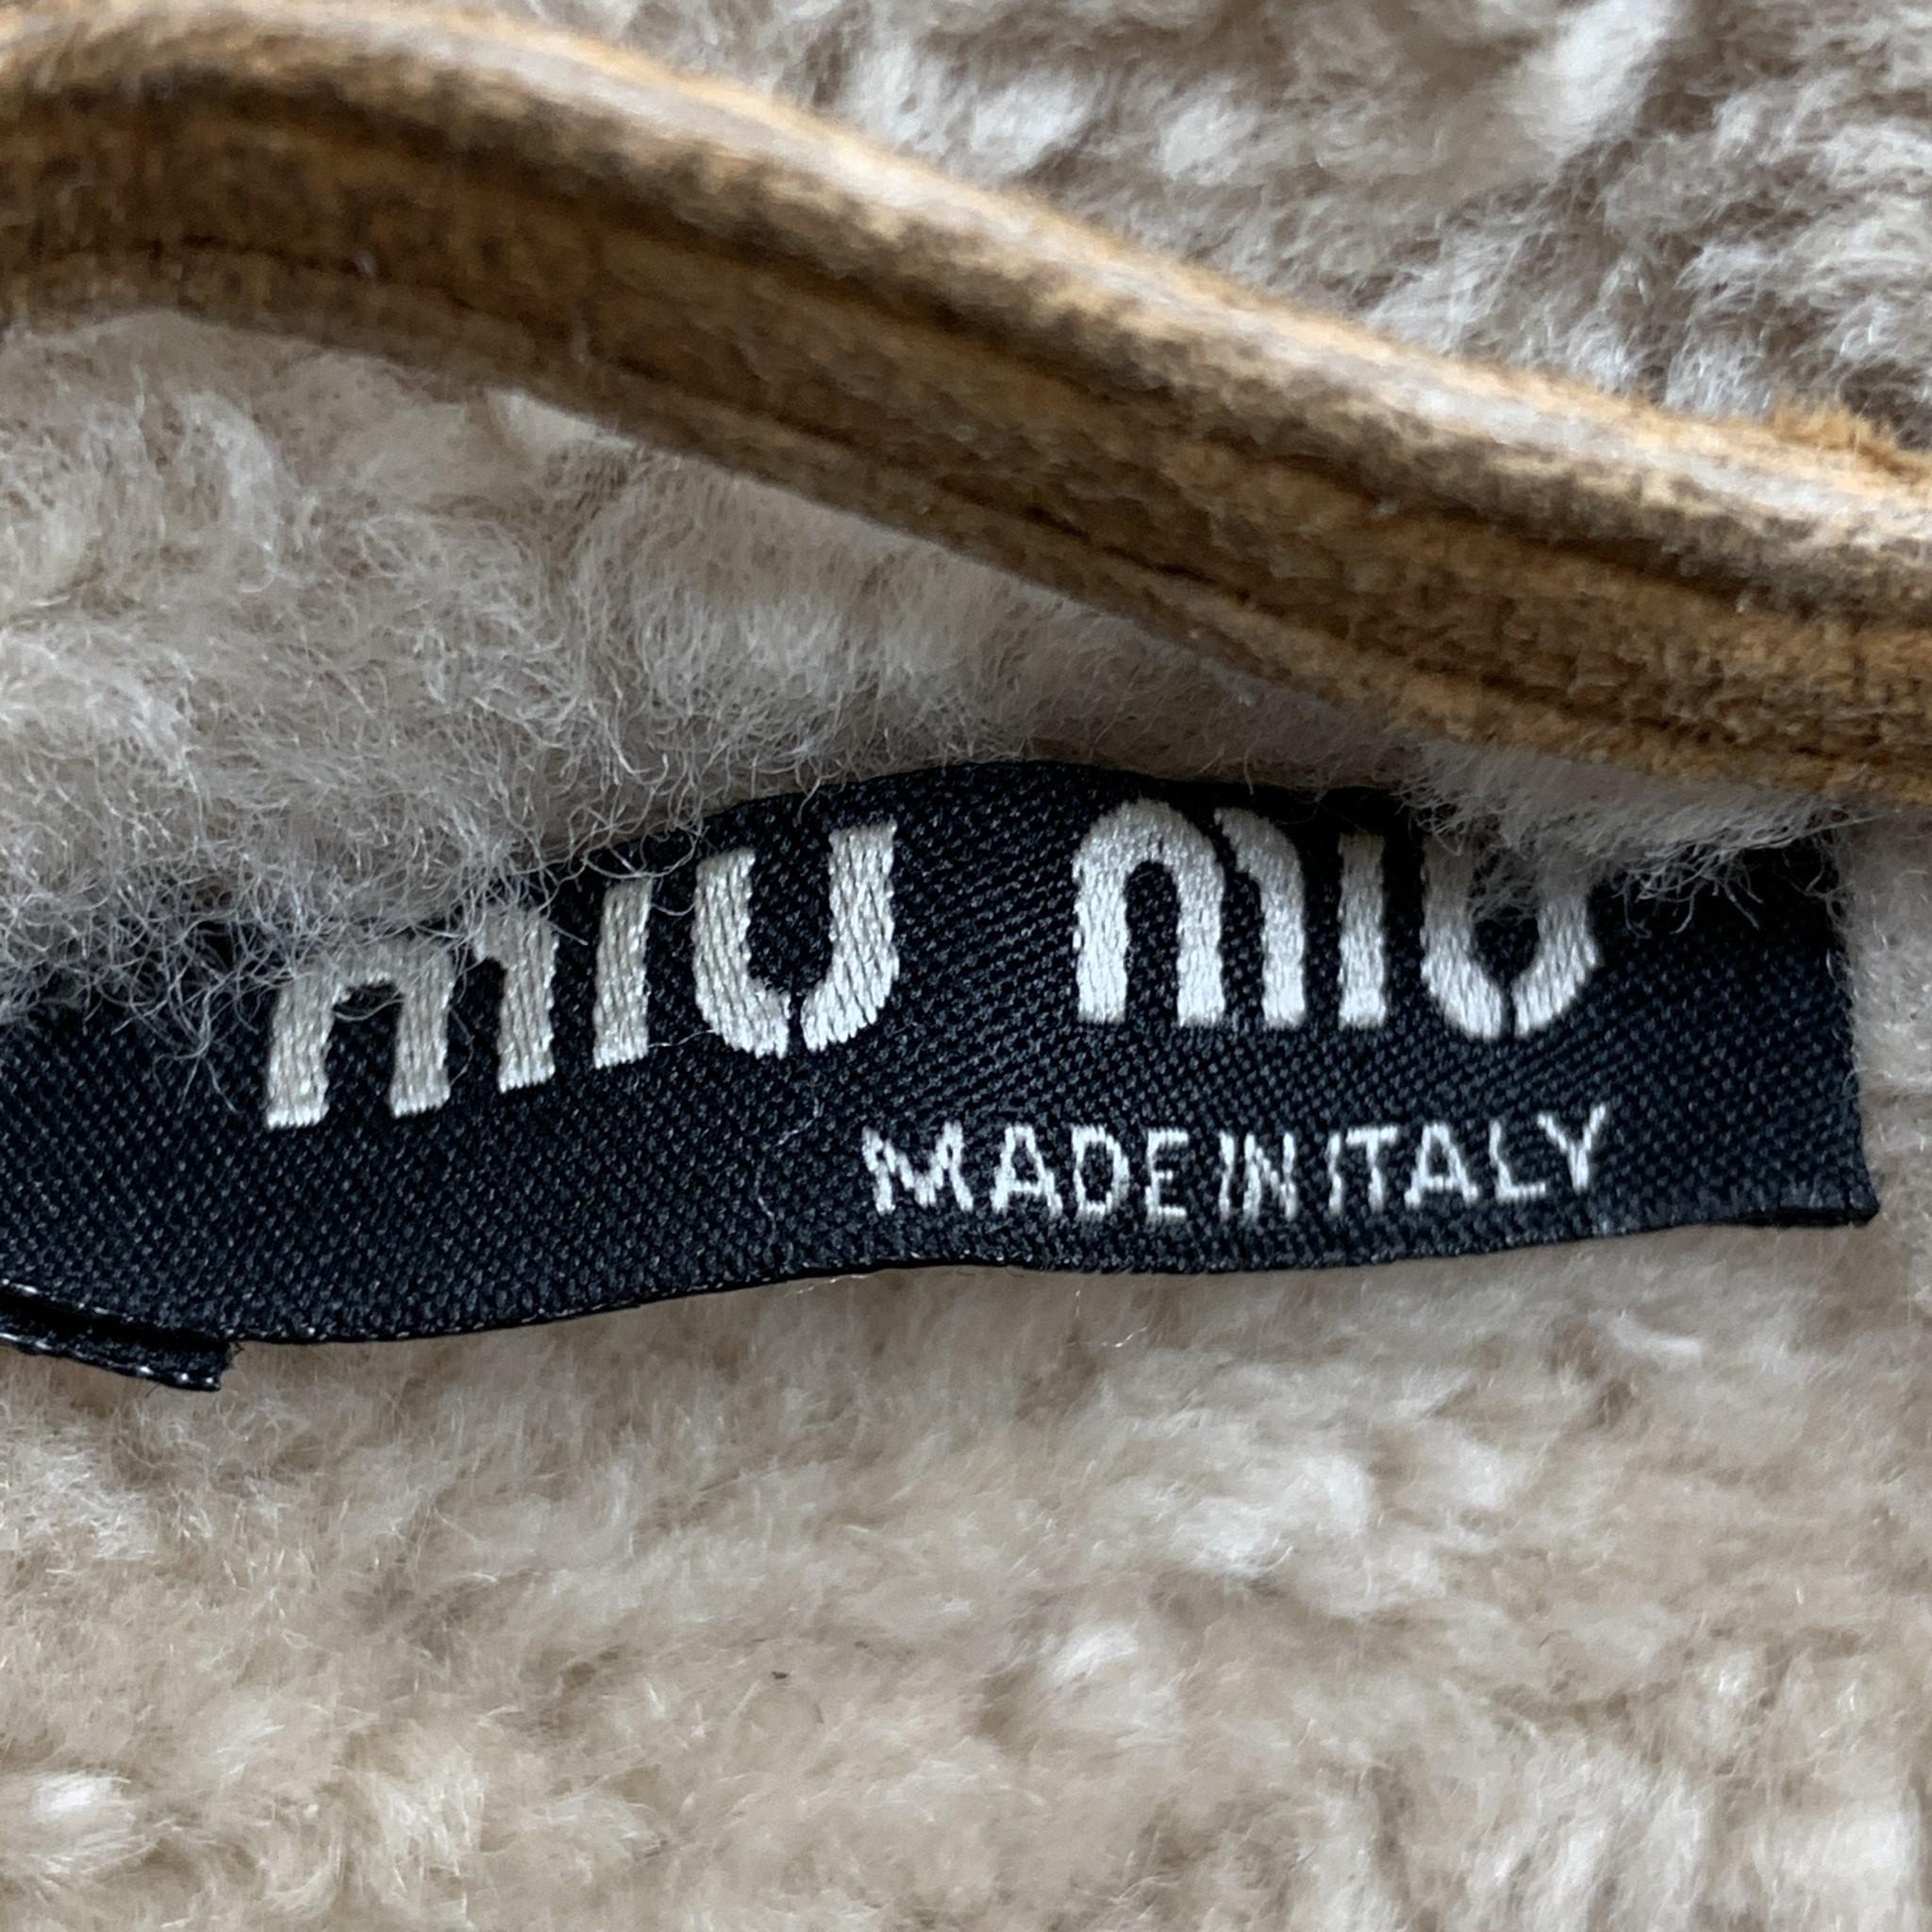 Men's MIU MIU Size US 36 / IT 46 Tan Distressed Shearling Biker Jacket